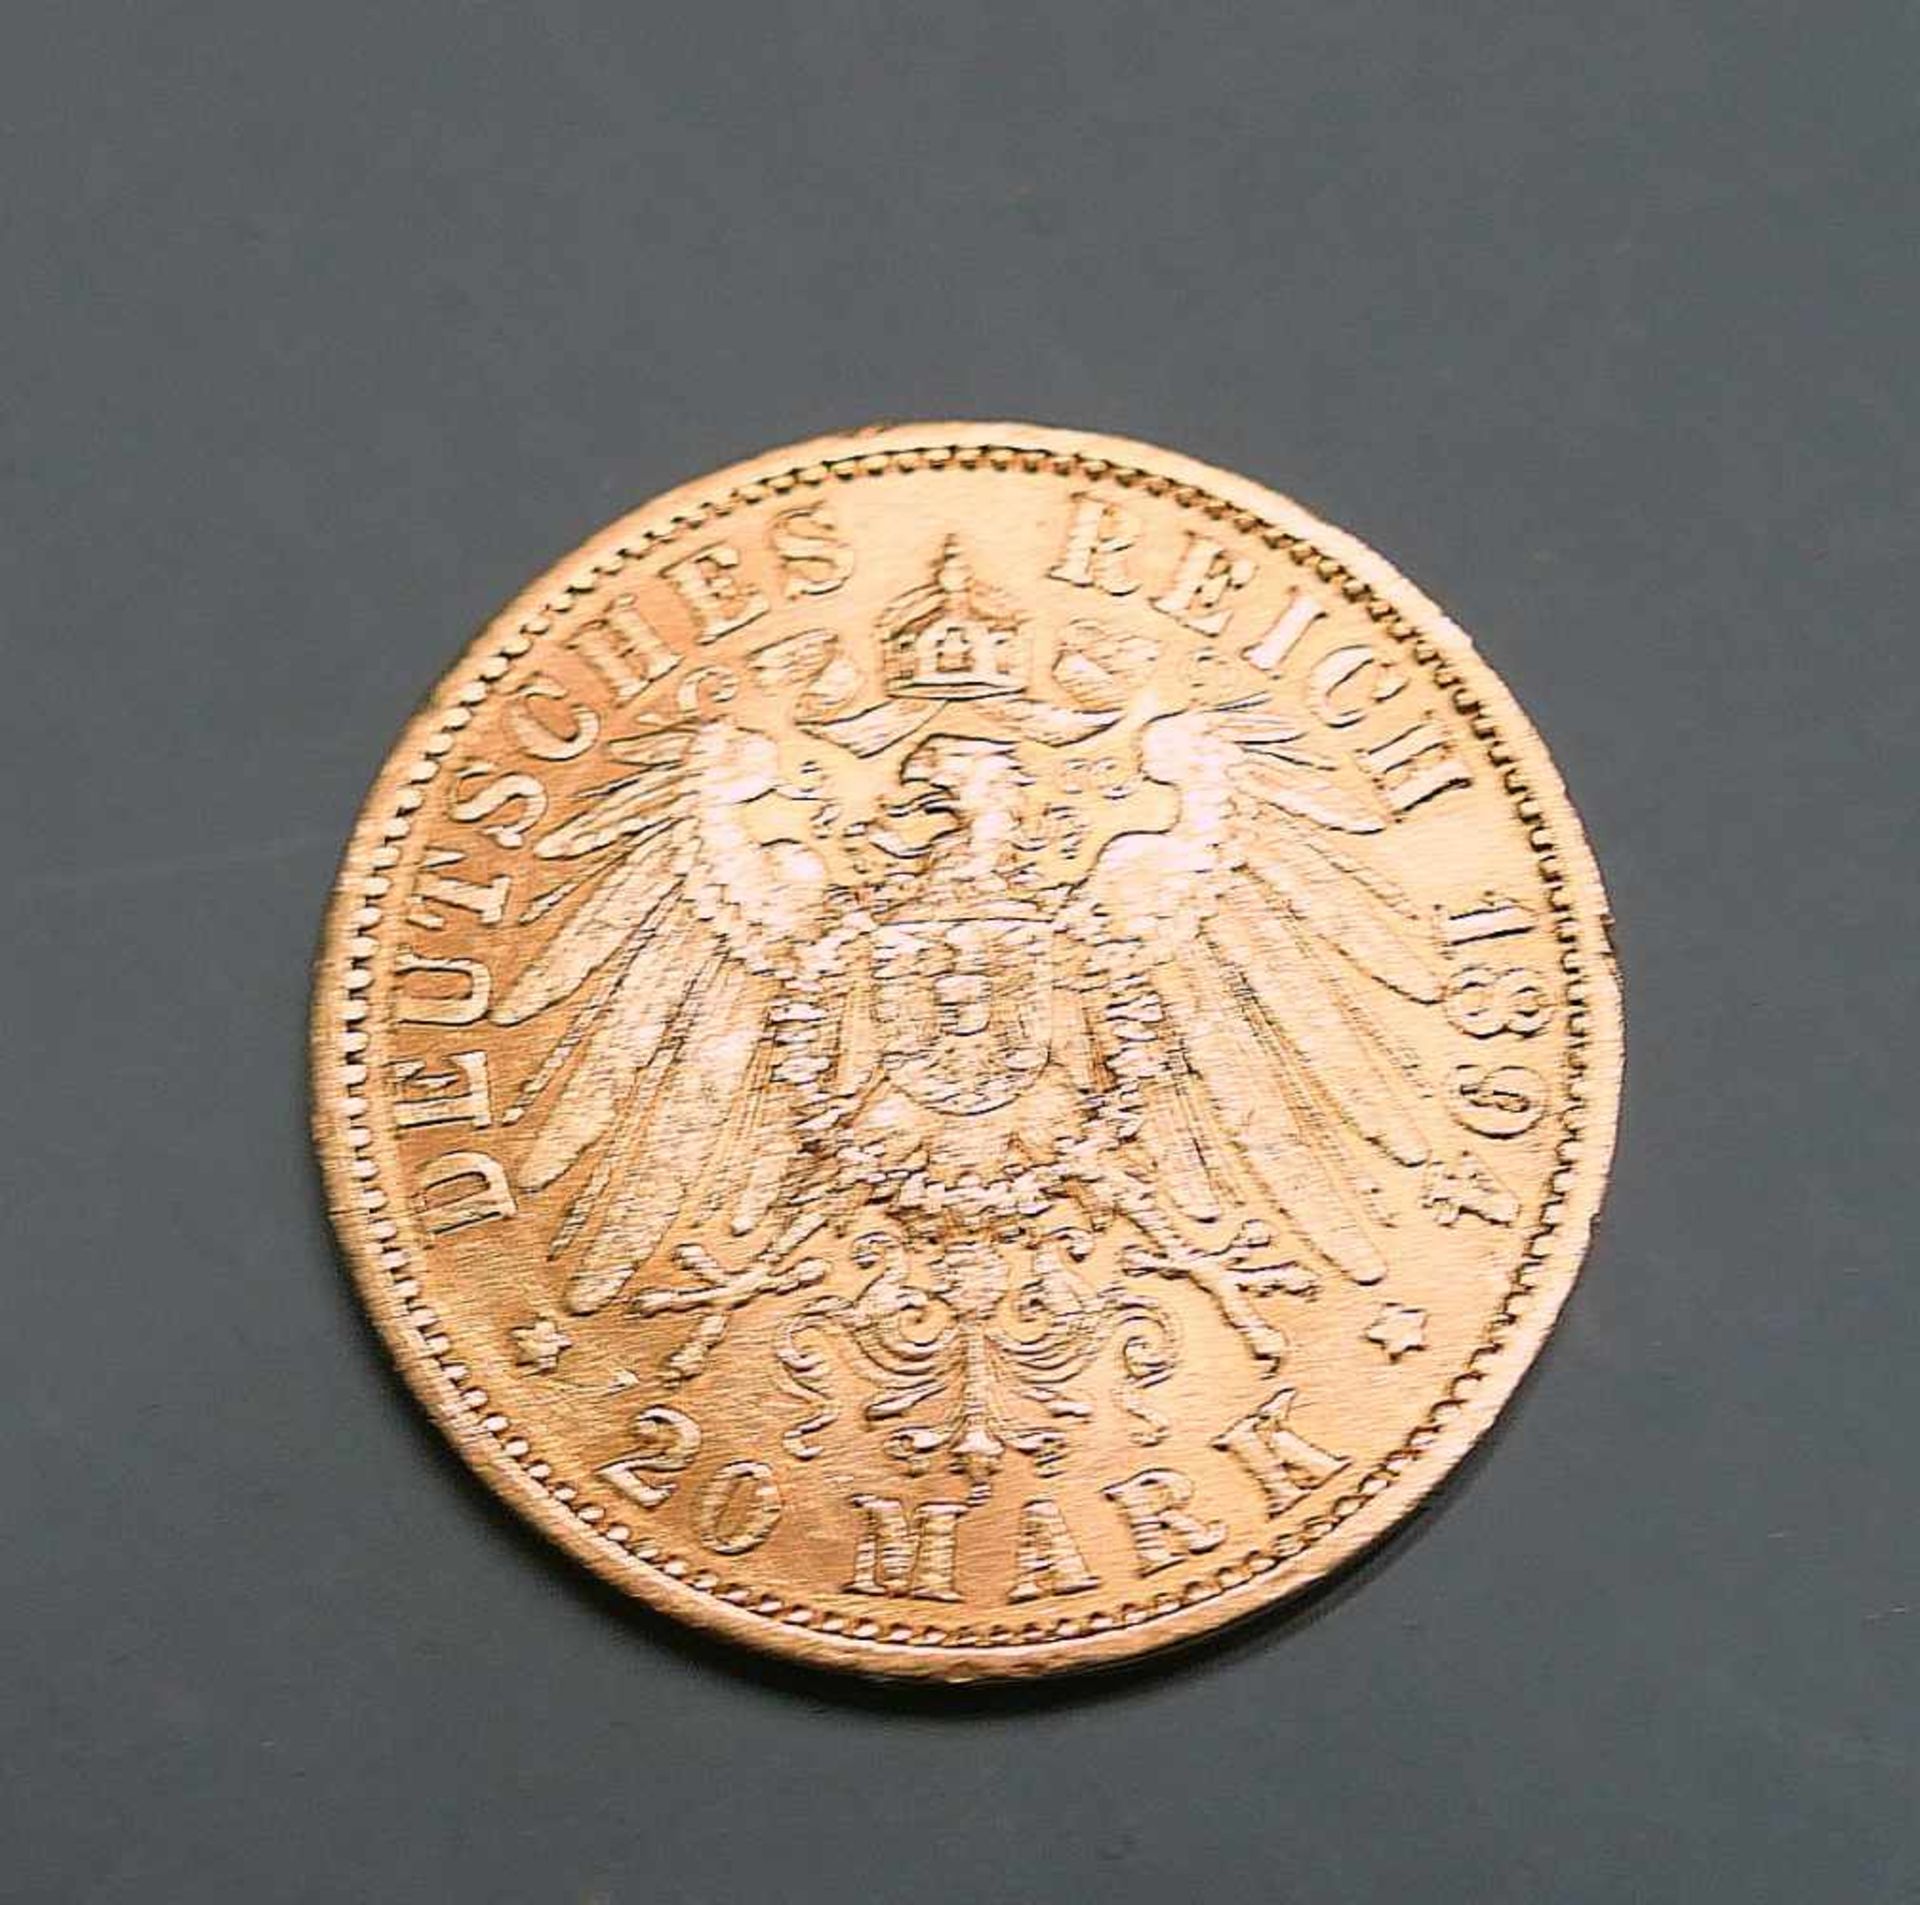 Goldmünze, 20 ReichsmarkGold. 20 Mark, Wilhelm II deutscher Kaiser König v. Preussen. A. - Bild 2 aus 2